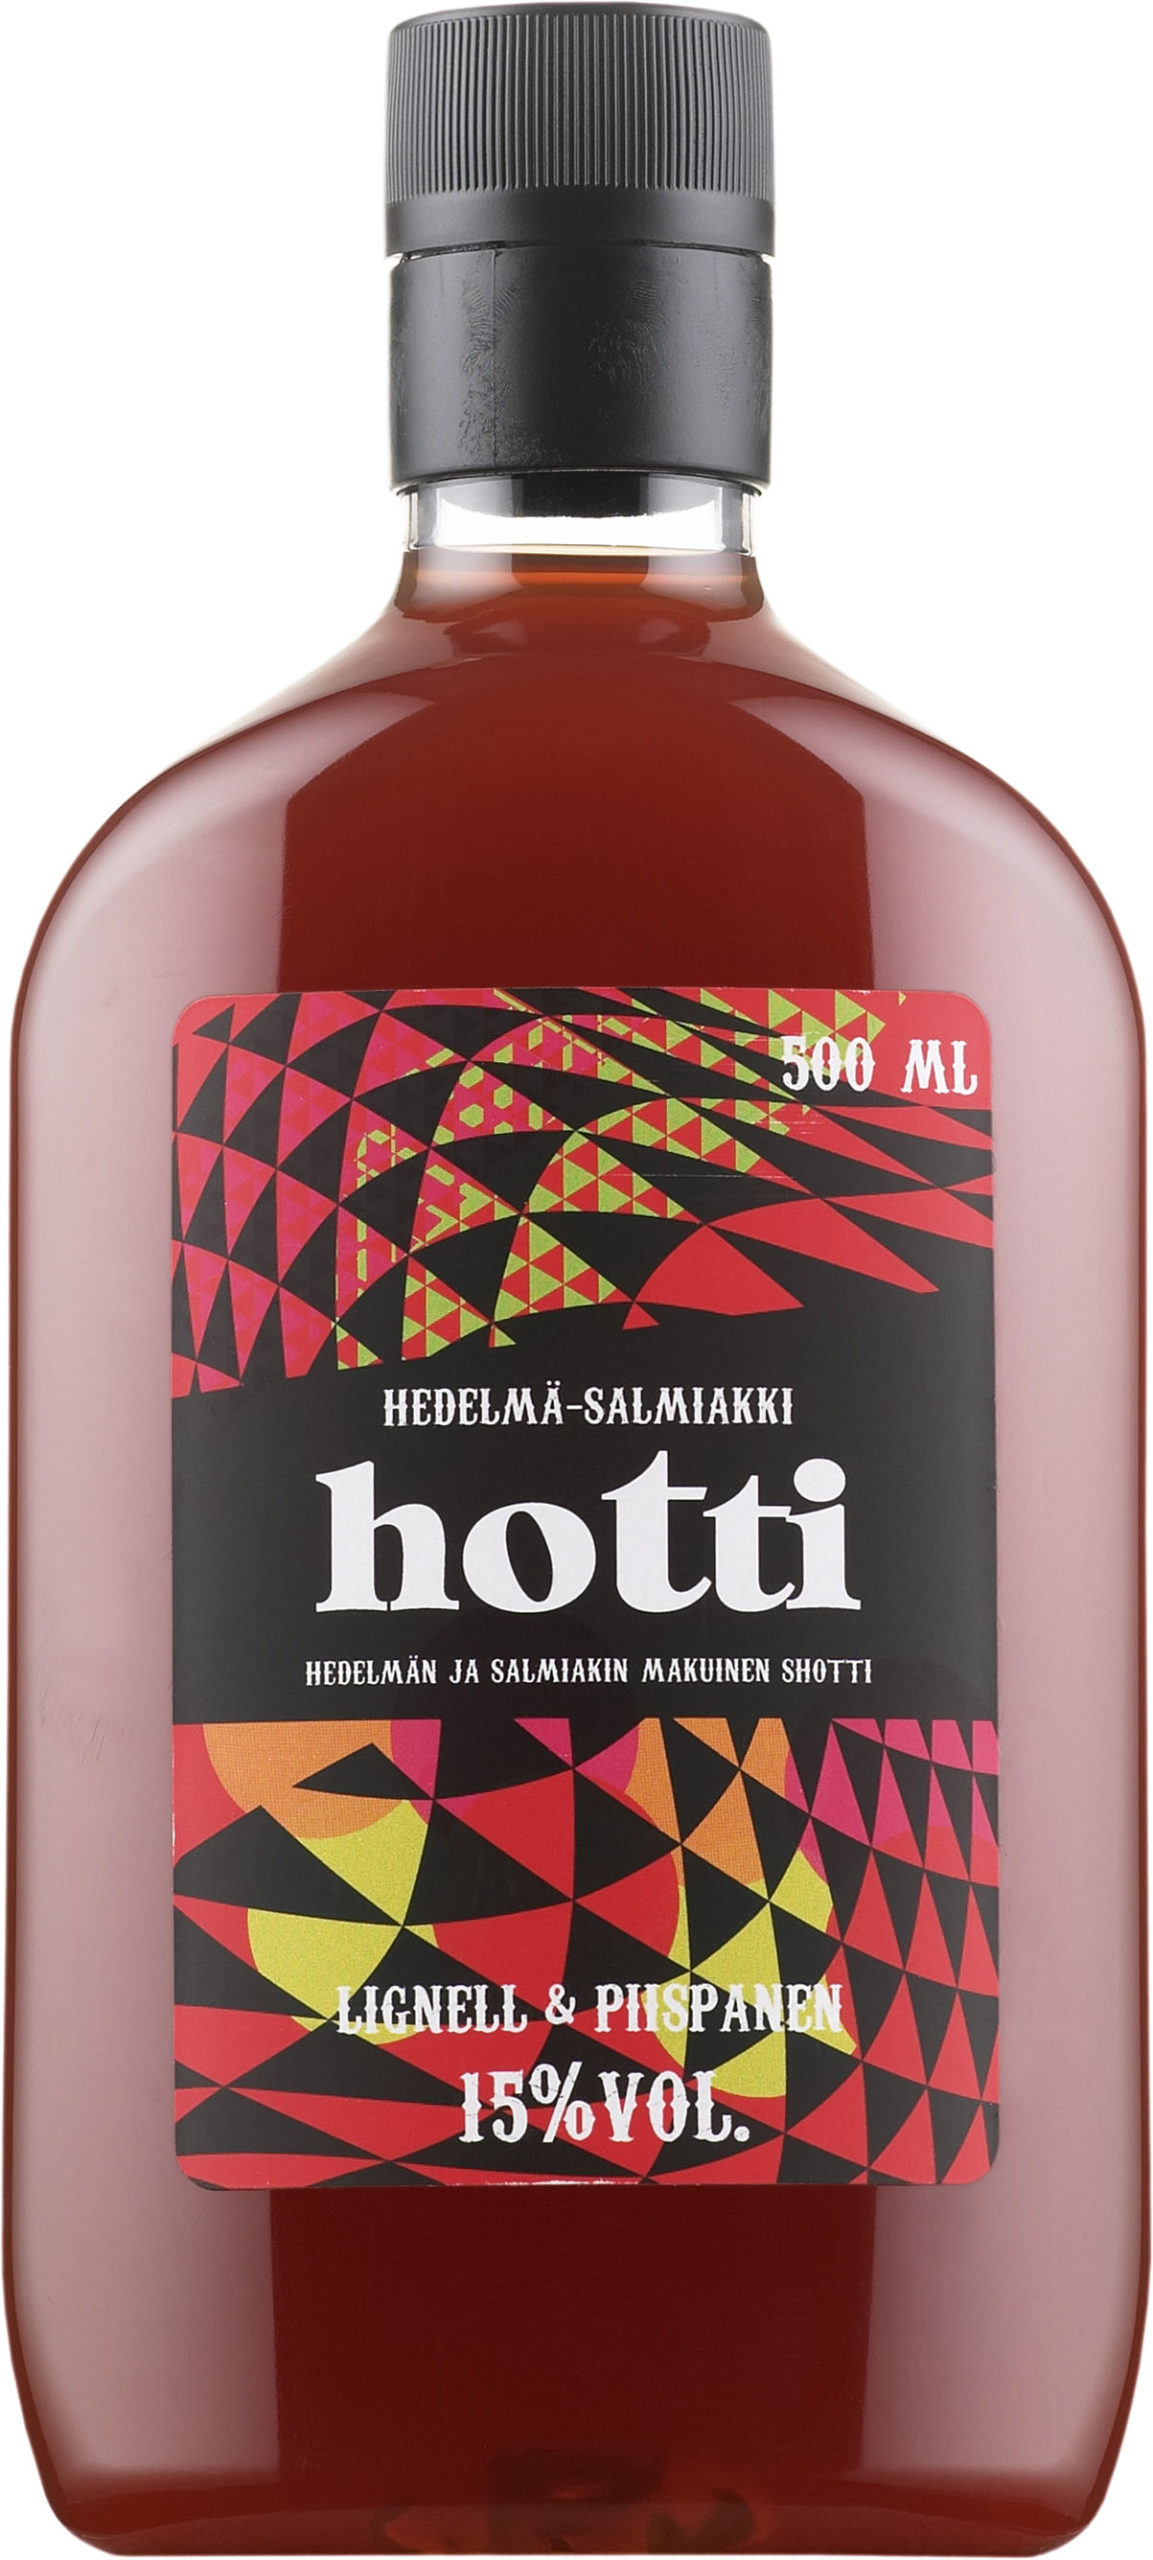 Hotti Hedelmä-Salmiakki plastic bottle